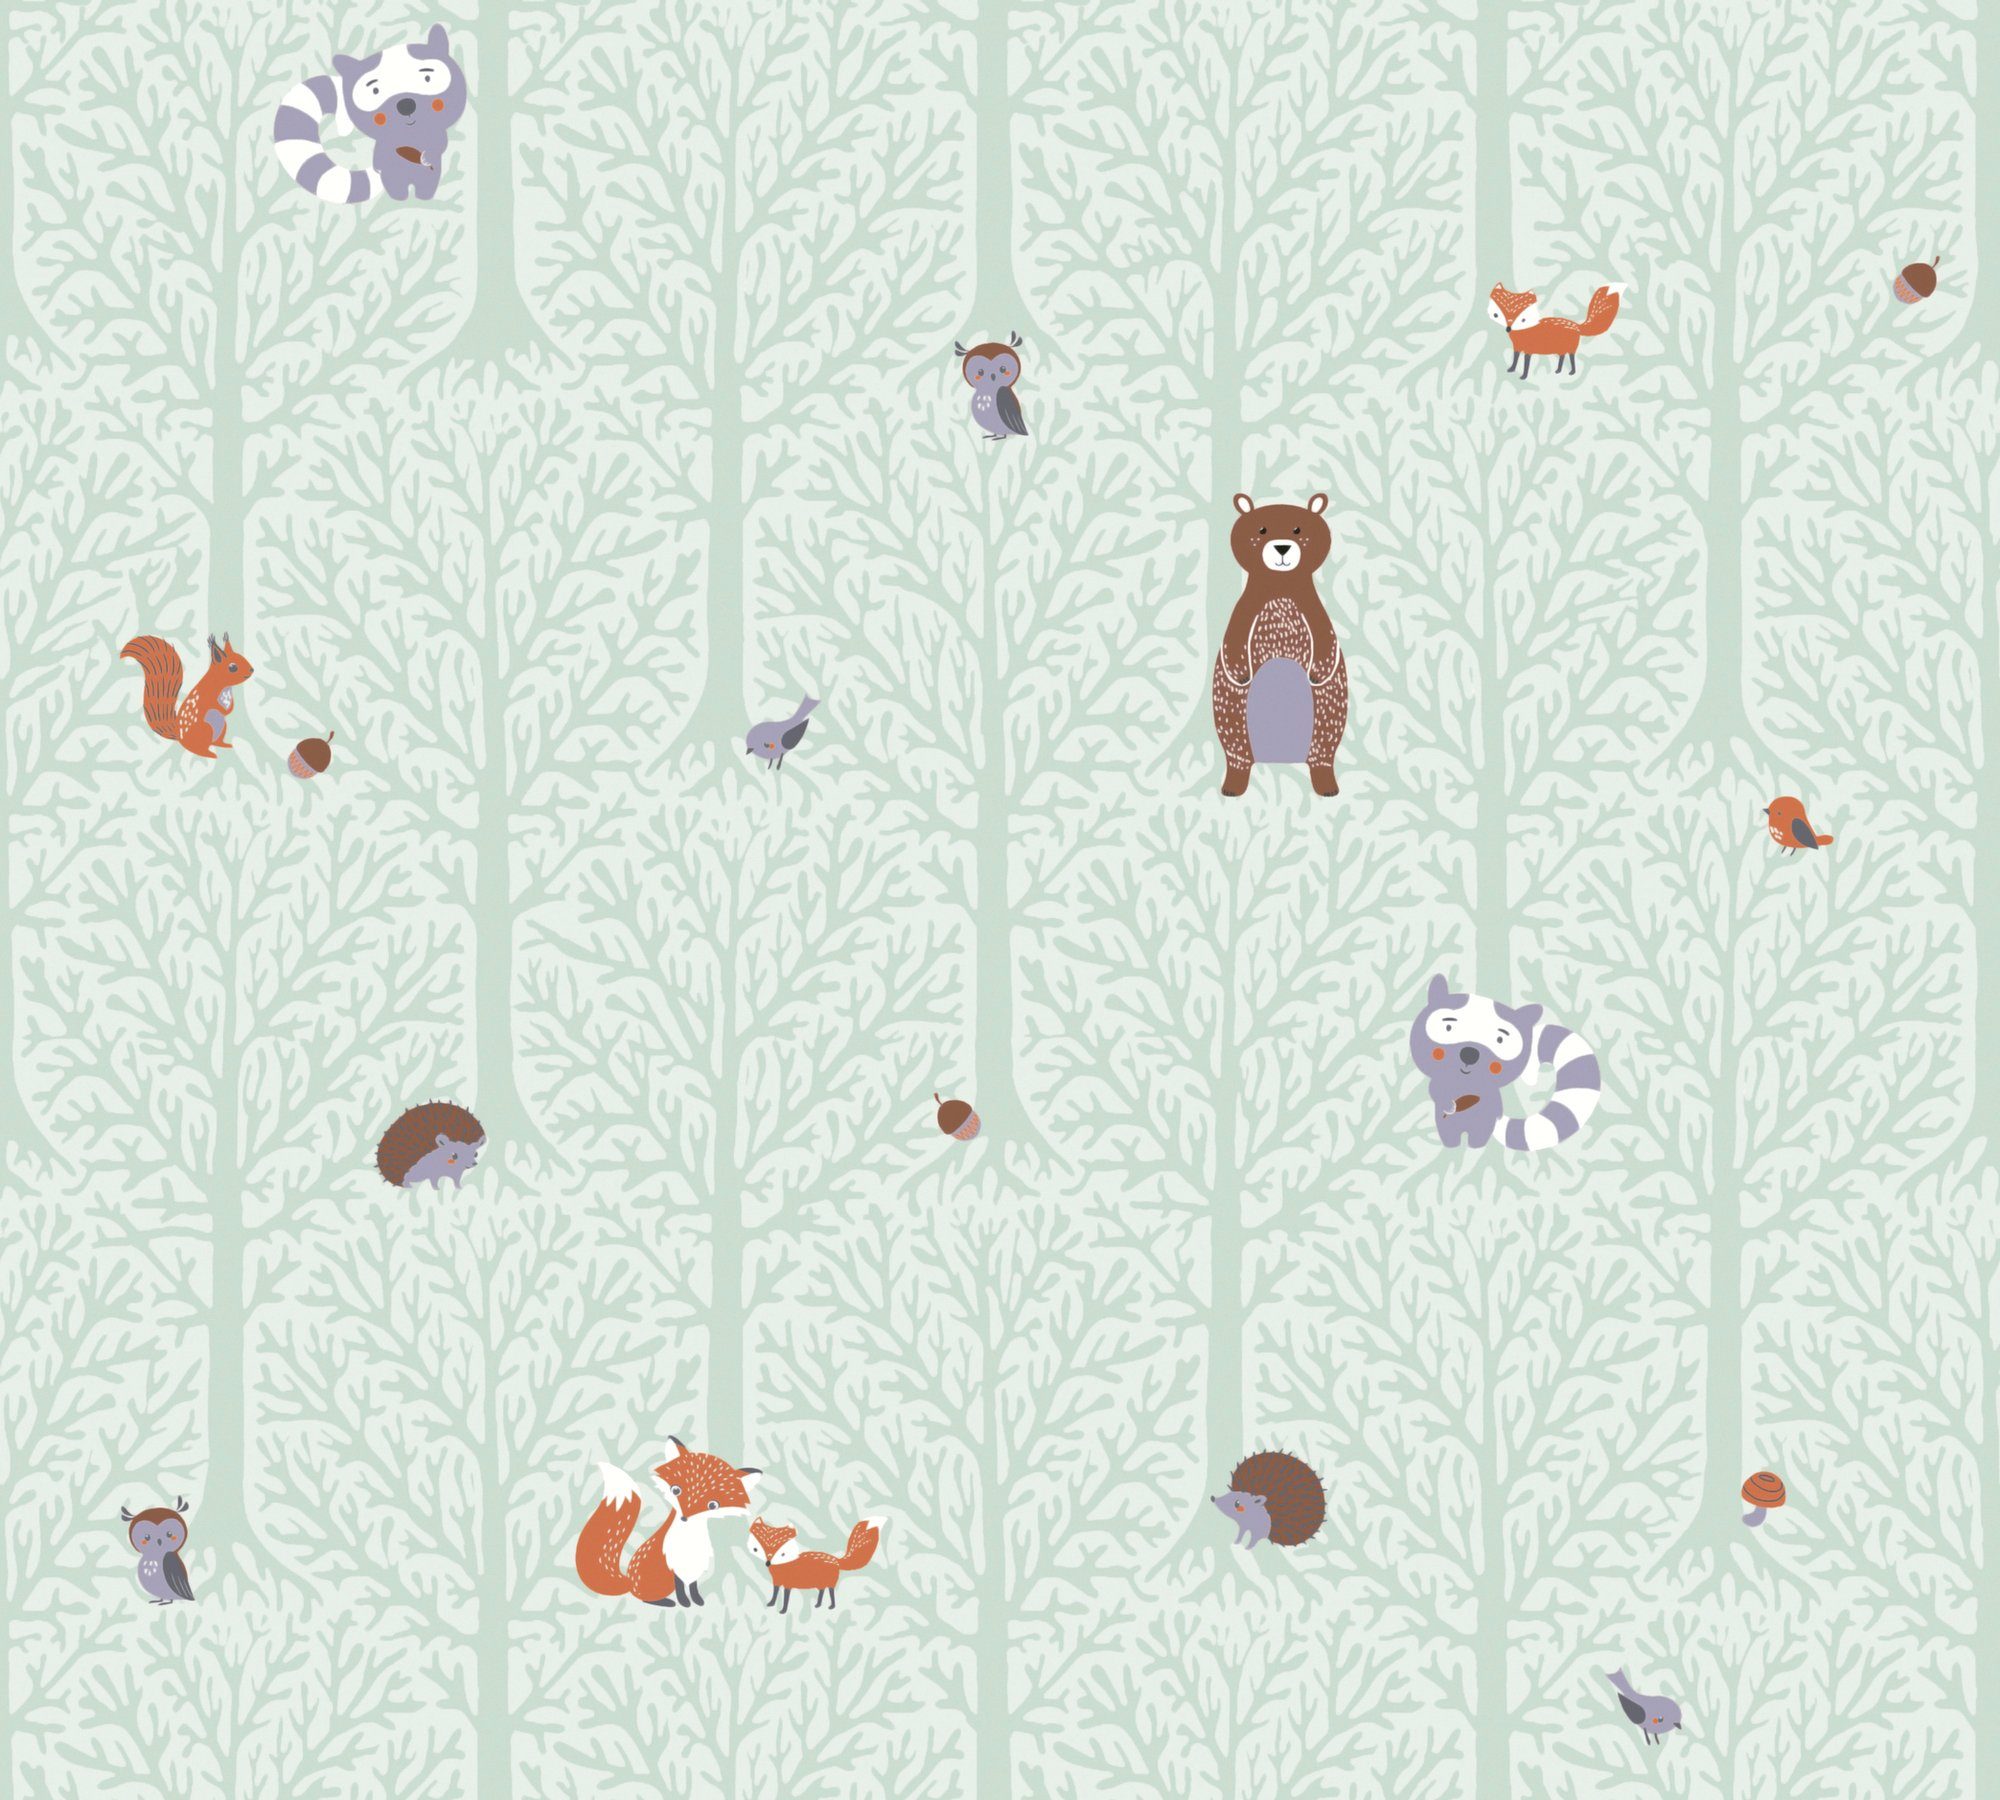 in A.S. Little Tapete Wandklebetechnik glatt, Wald, Love, saubere Création Vliestapete Verarbeitung Kinderzimmertapete Einfache, schnelle und